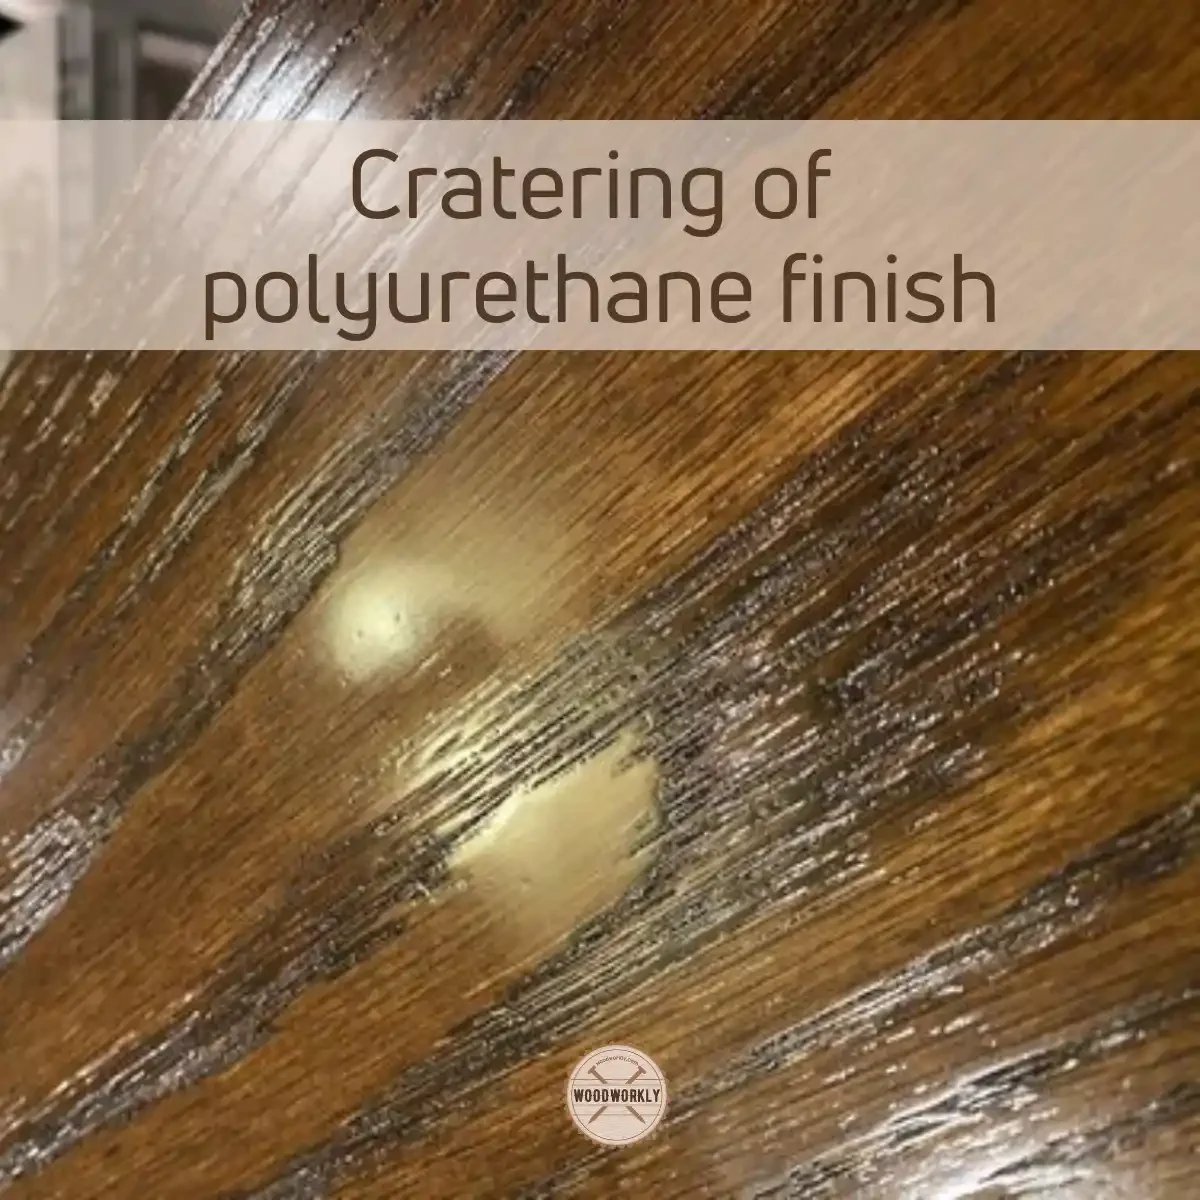 Cratering on polyurethane finish